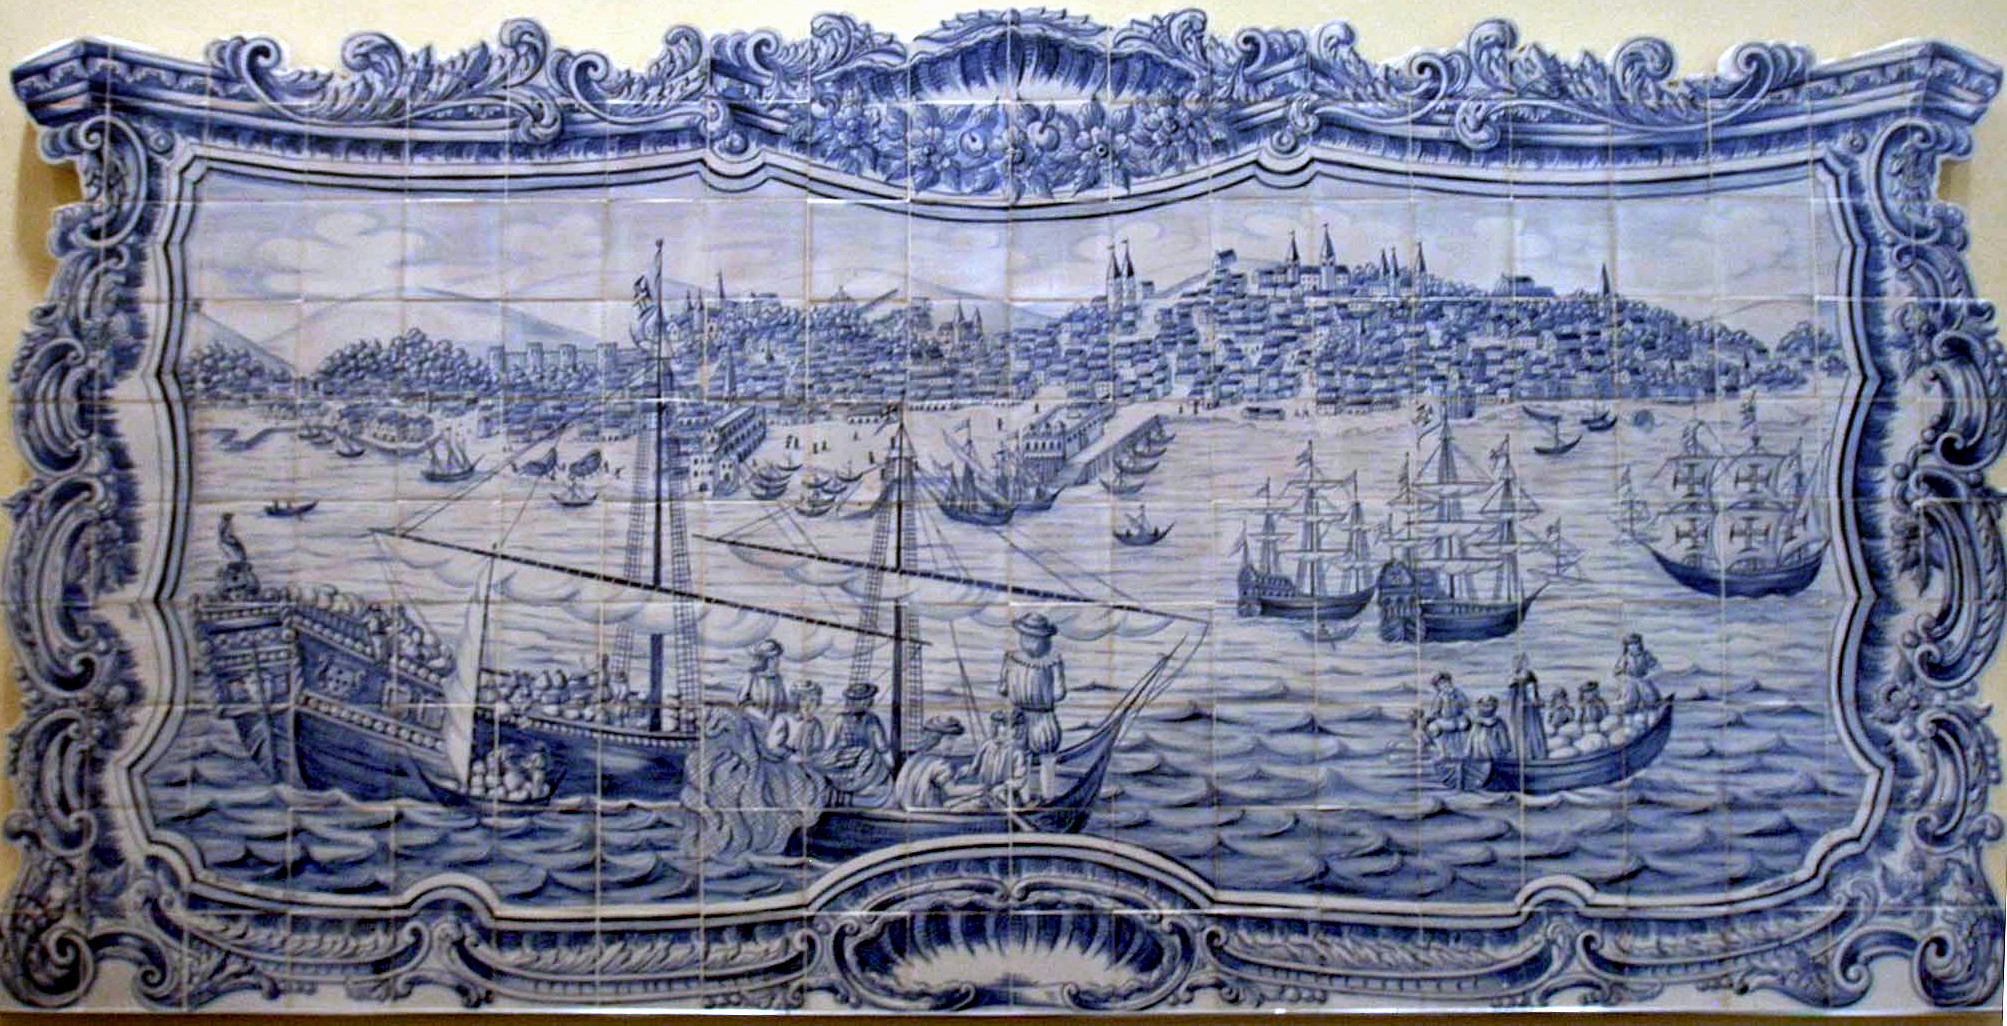 لشبونة - سيكولو الثامن عشر (لشبونة - القرن الثامن عشر), UNNY215G, 1996, البرتغال